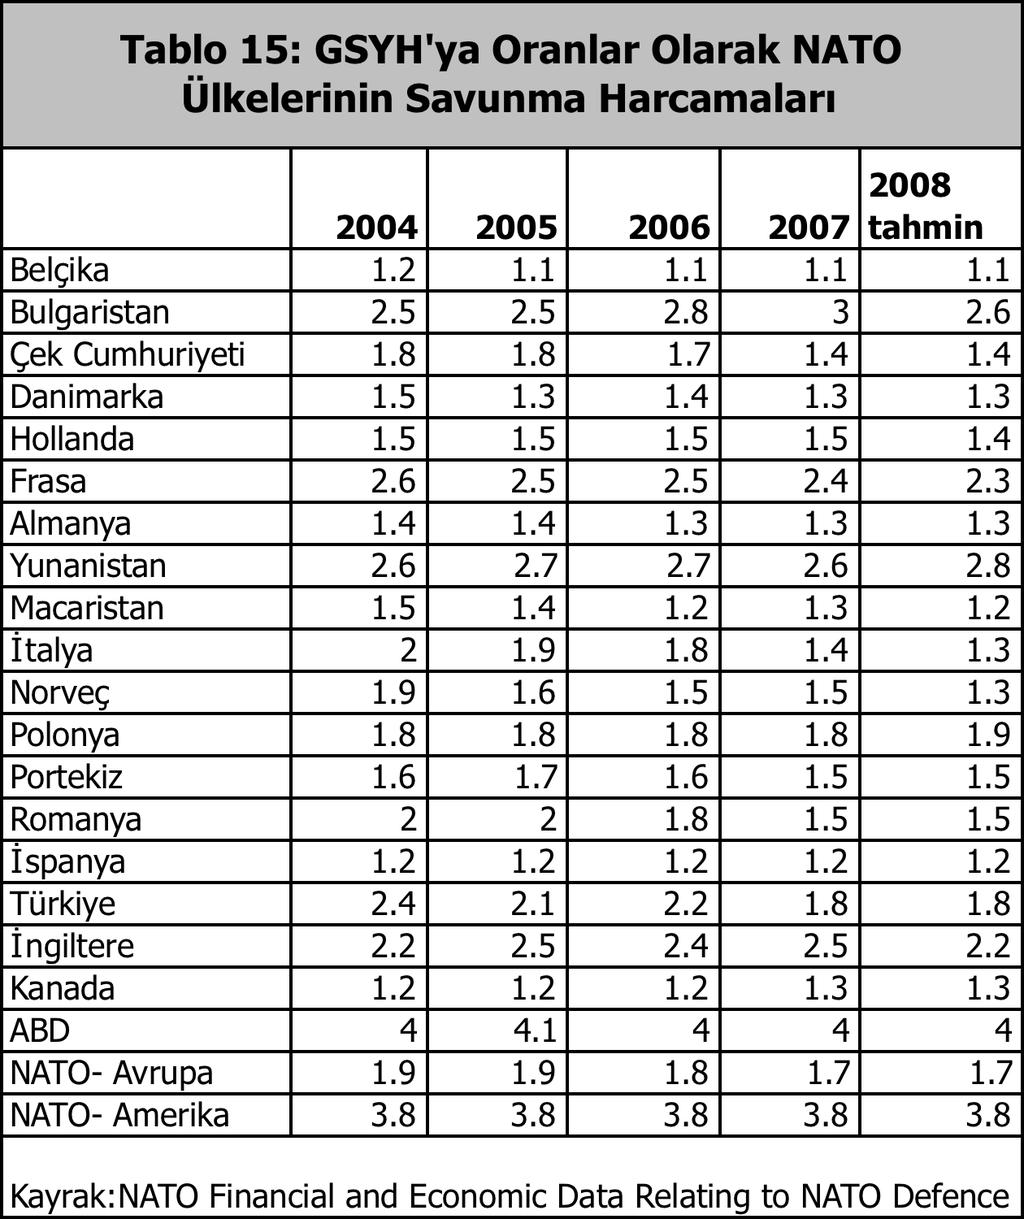 Ancak Türkiye e 2006 ve 2007 yıllarında görüln askeri harcamaların GSYH ya oranındaki düşüş (2.2 den 1.